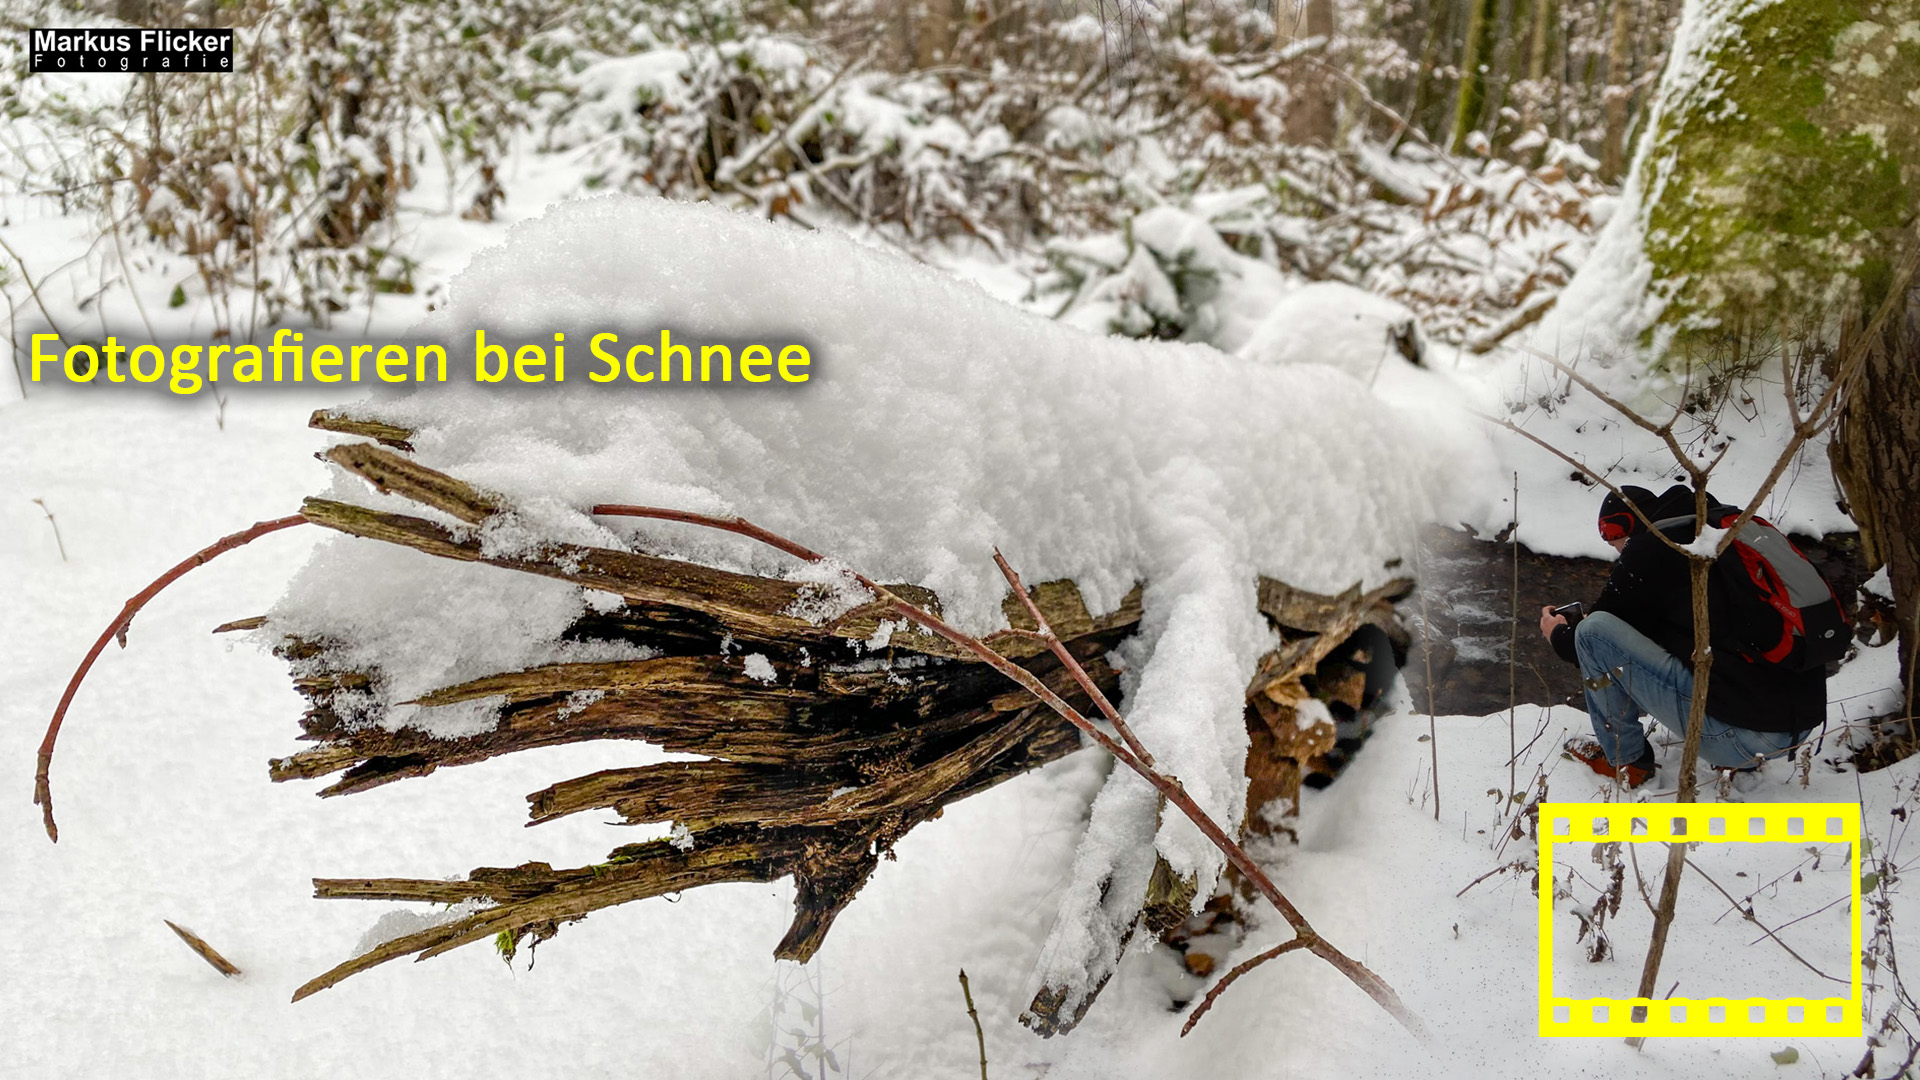 Fotografieren bei Schnee im Wald mit dem Smartphone